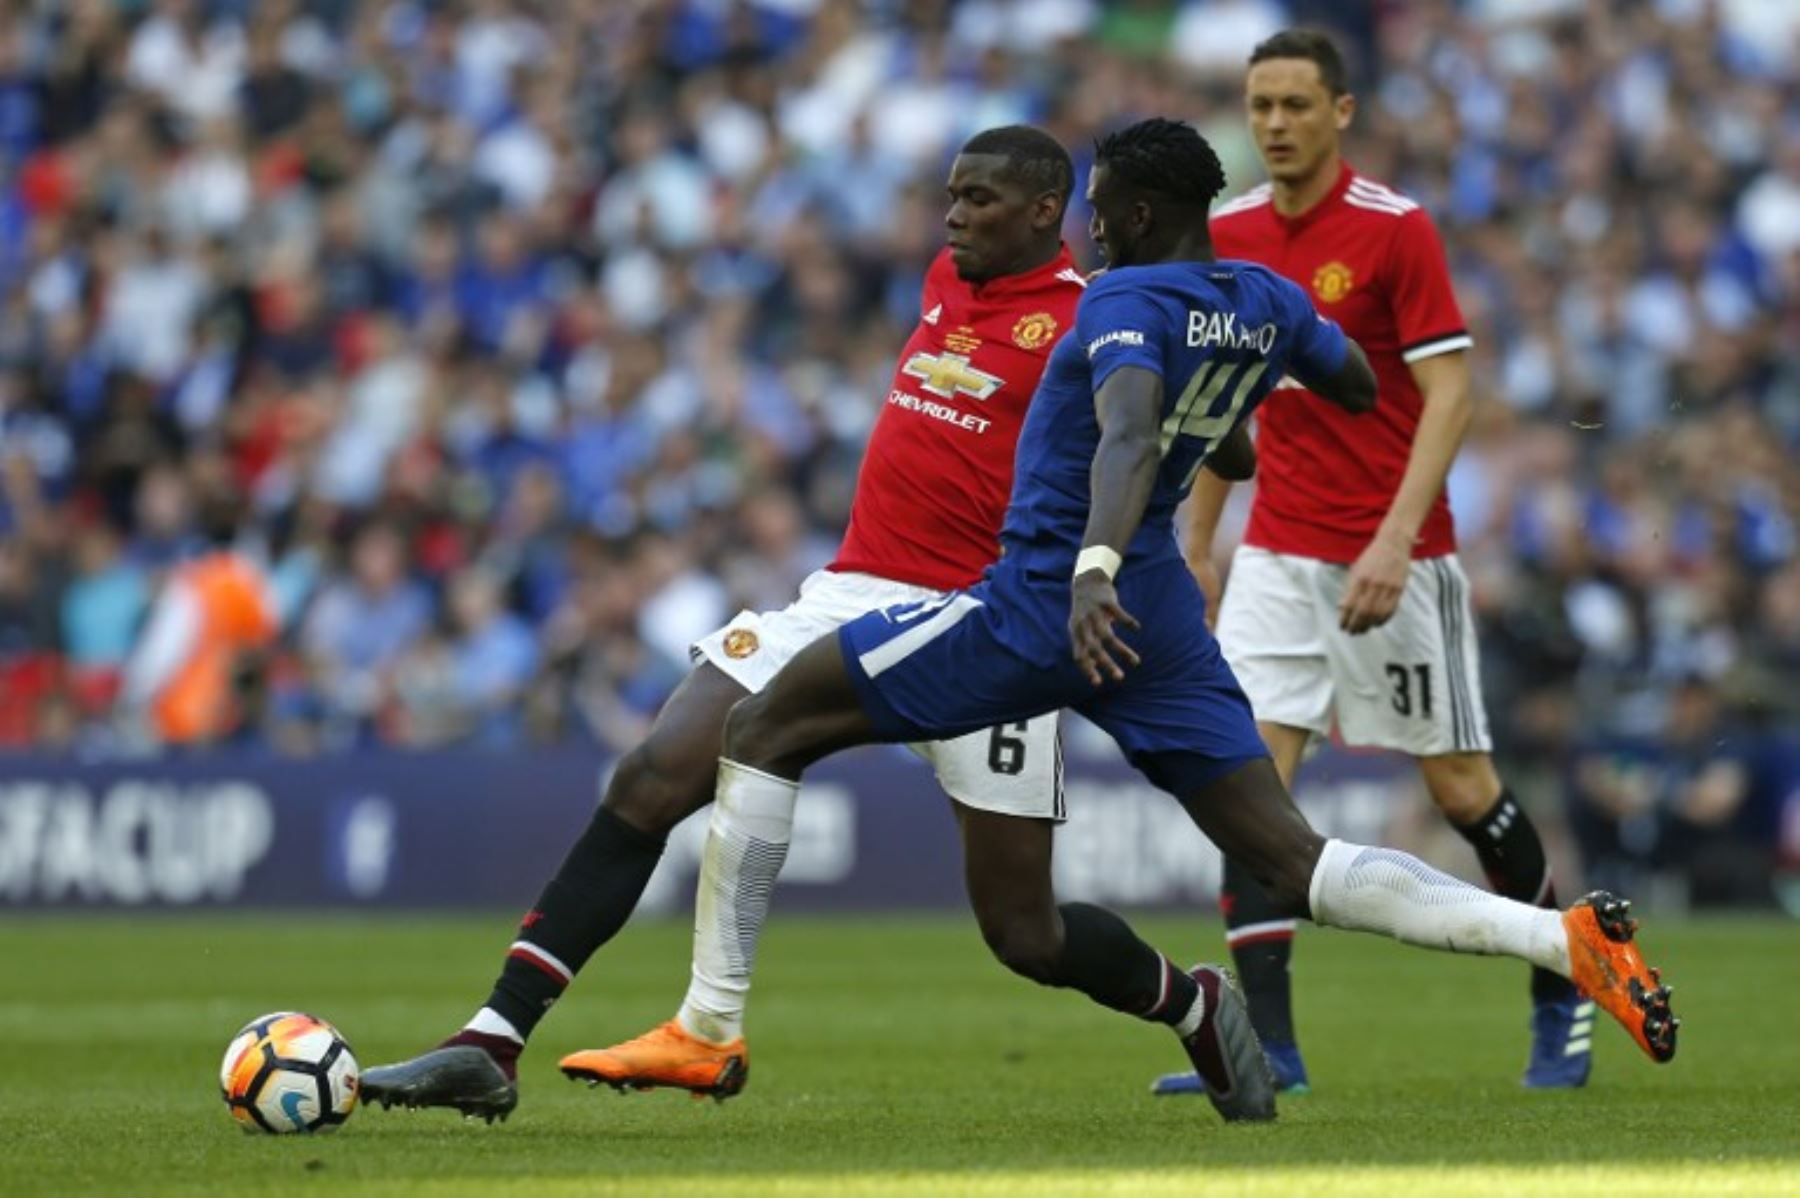 El francés del Manchester United Paul Pogba compite con el centrocampista del Chelsea Tiemoue Bakayoko durante el partido de fútbol final de la FA Cup inglesa entre Chelsea y Manchester United en el estadio Wembley de Londres.Foto:AFP